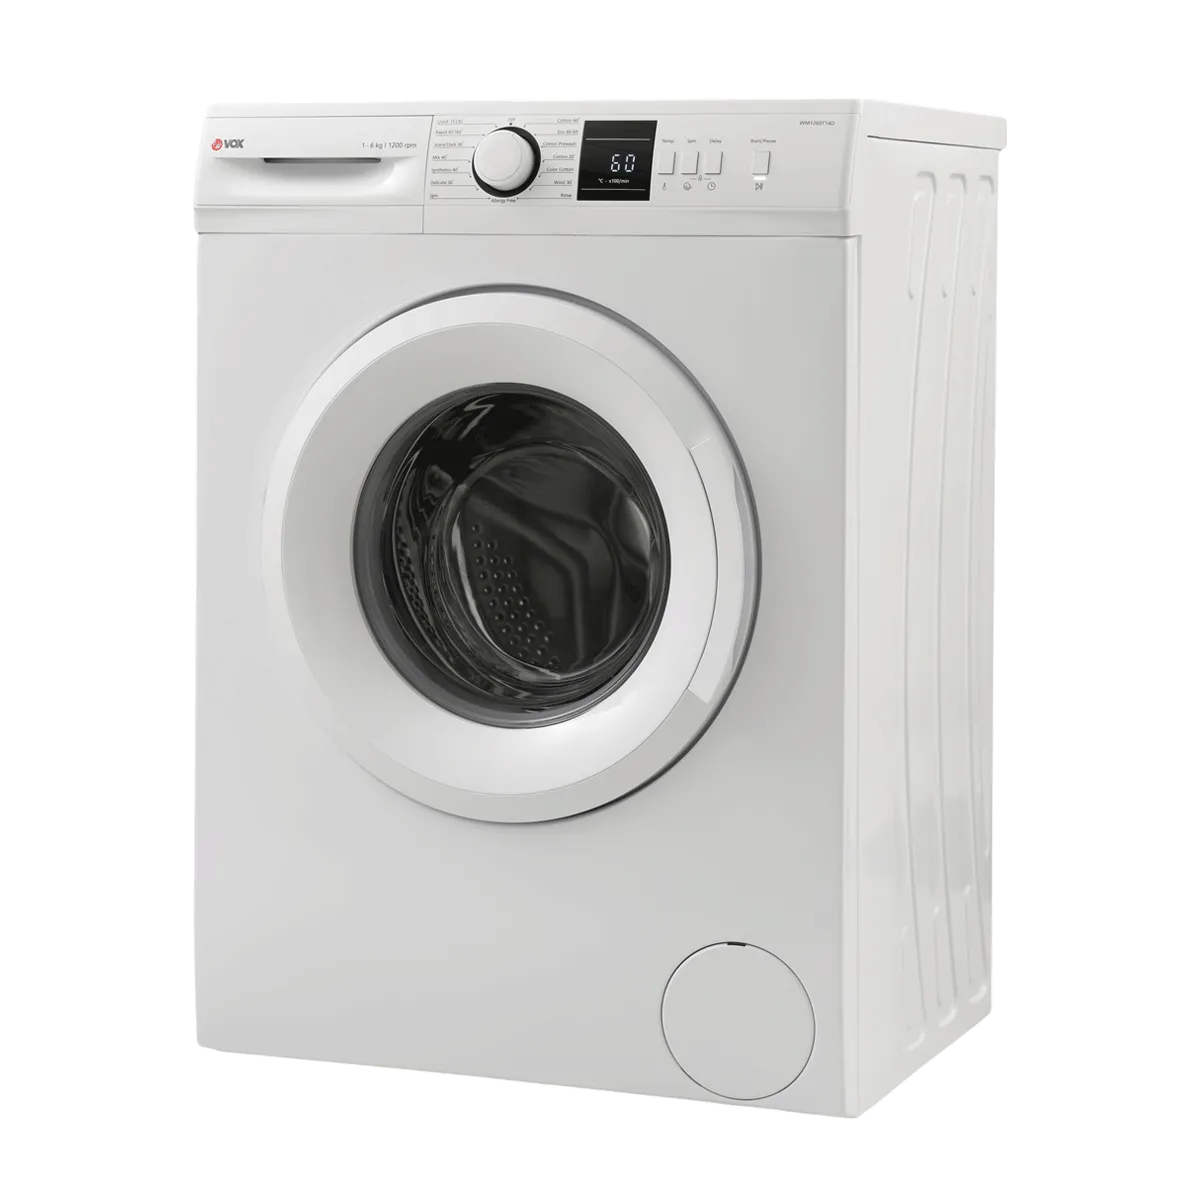 Washing machine WM1260-T14D 